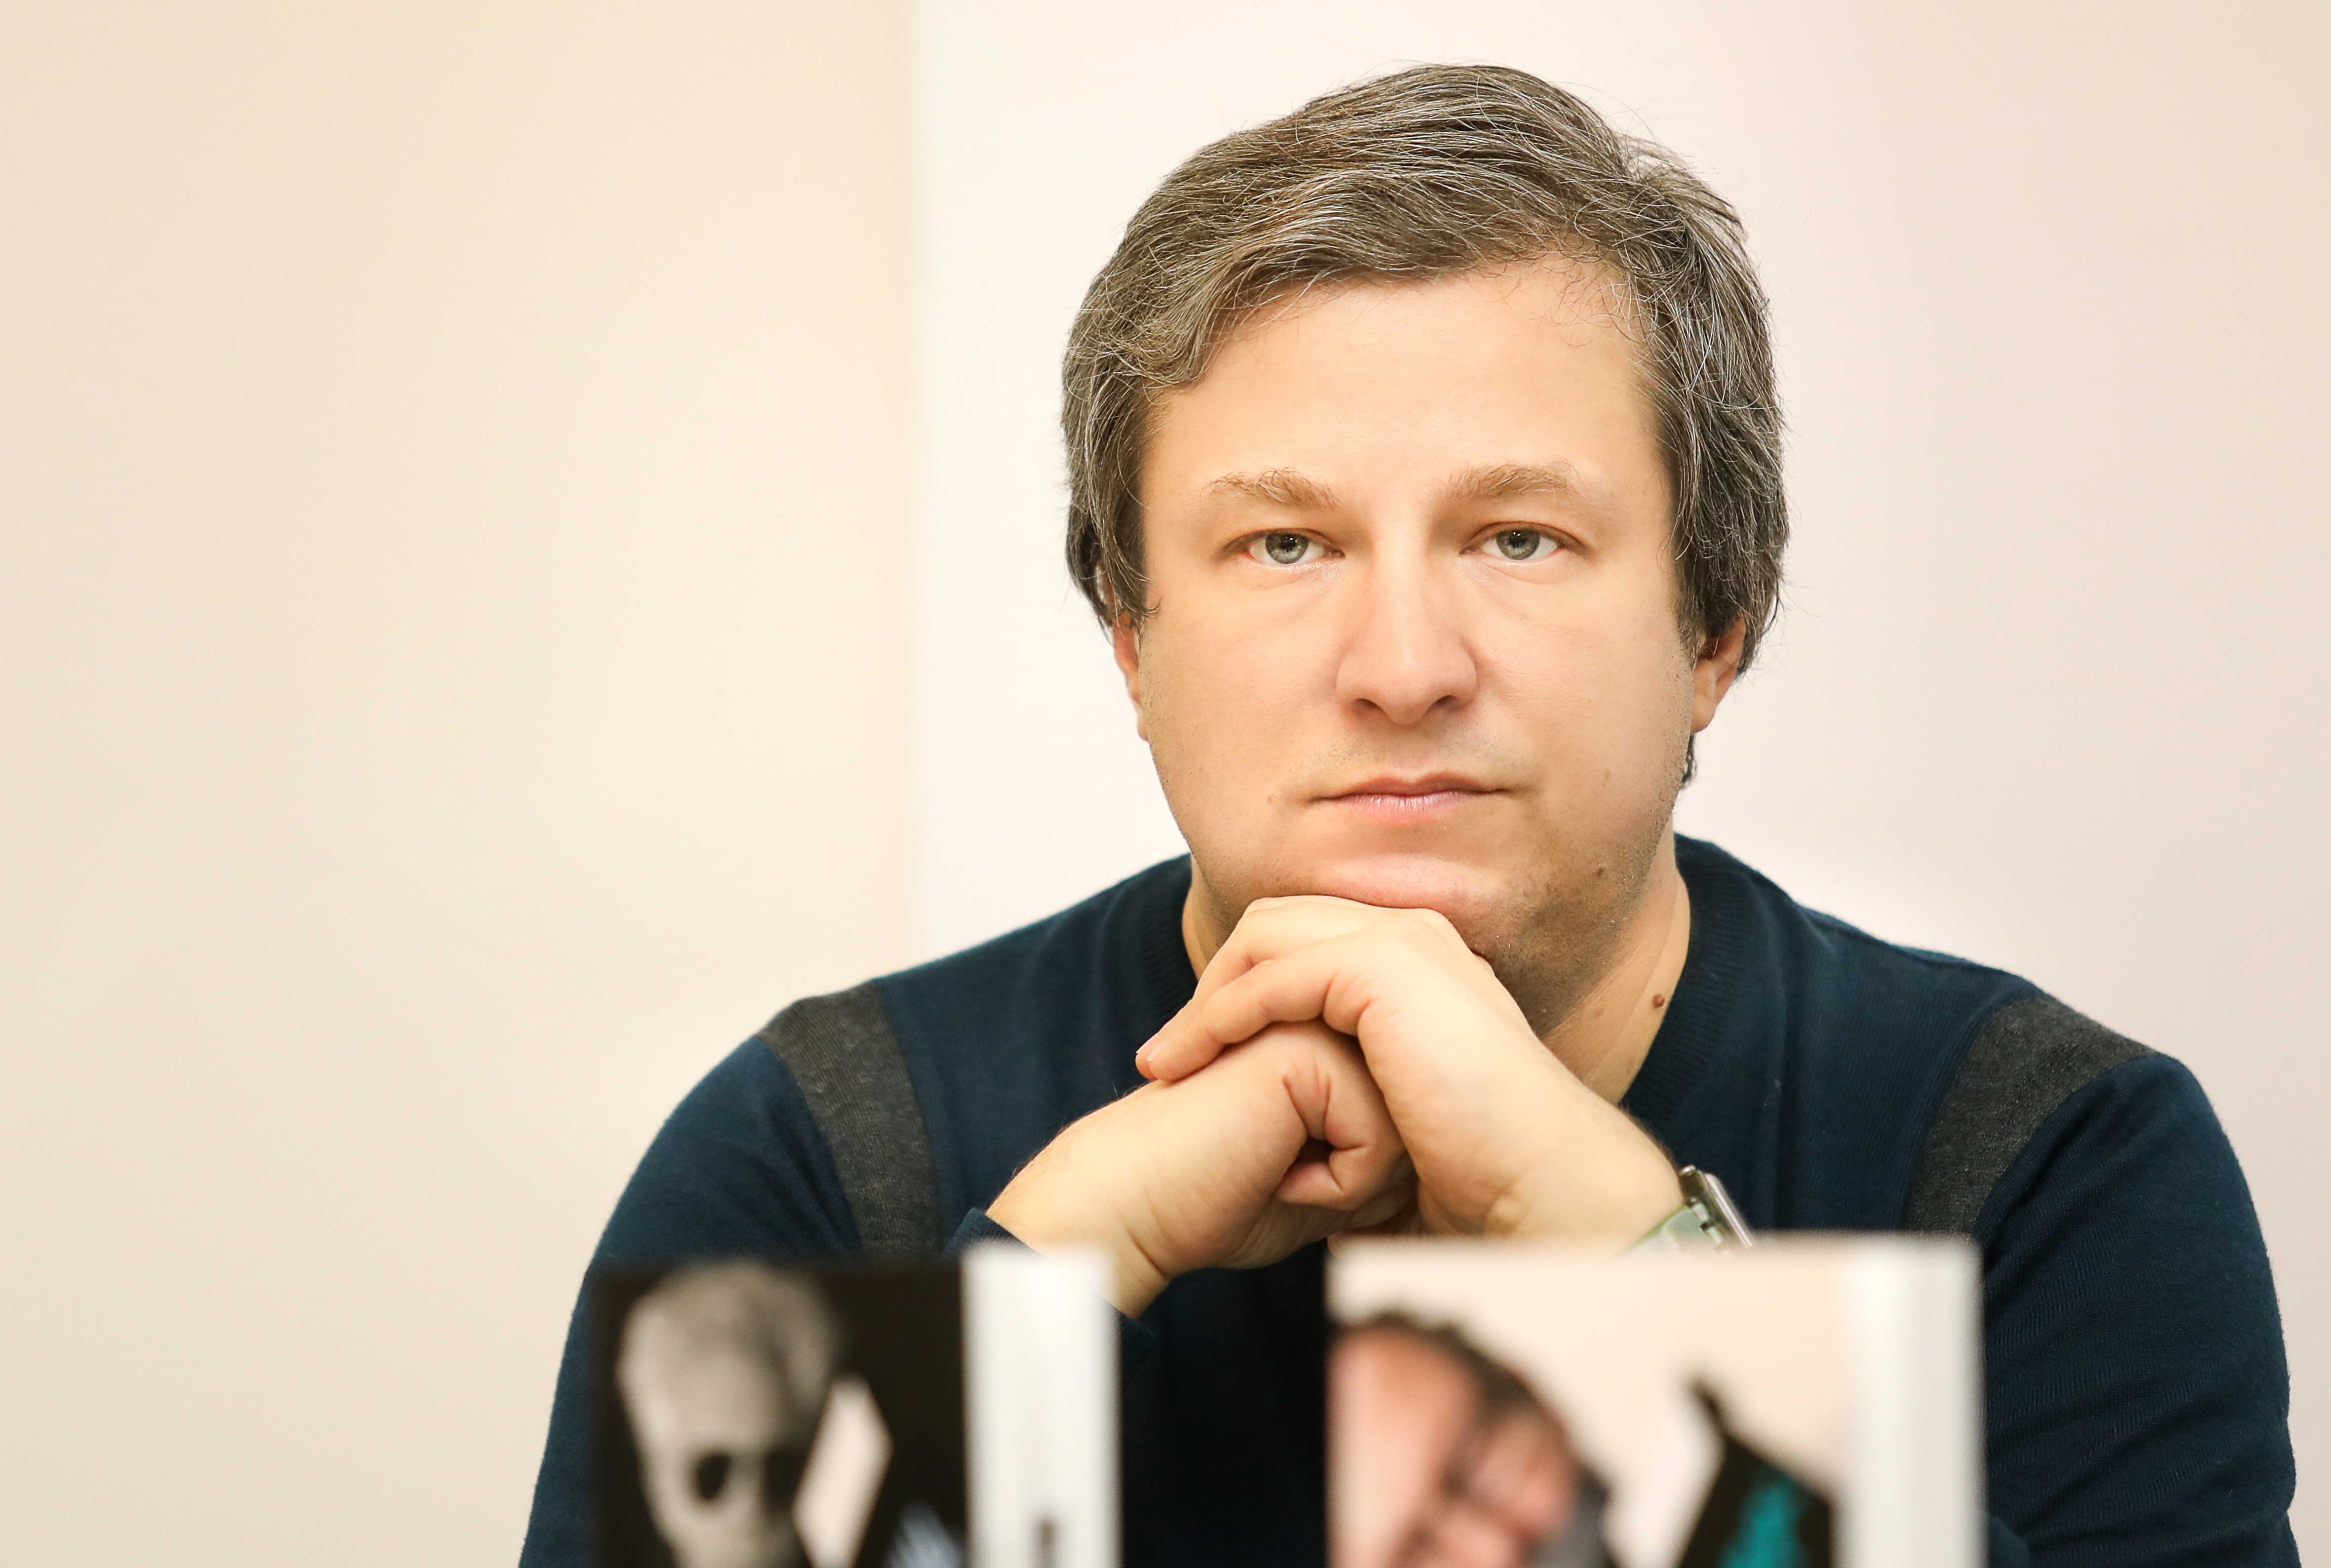 Кинокритик Антон Долин объявил об уходе из экспертного совета Фонда Кино